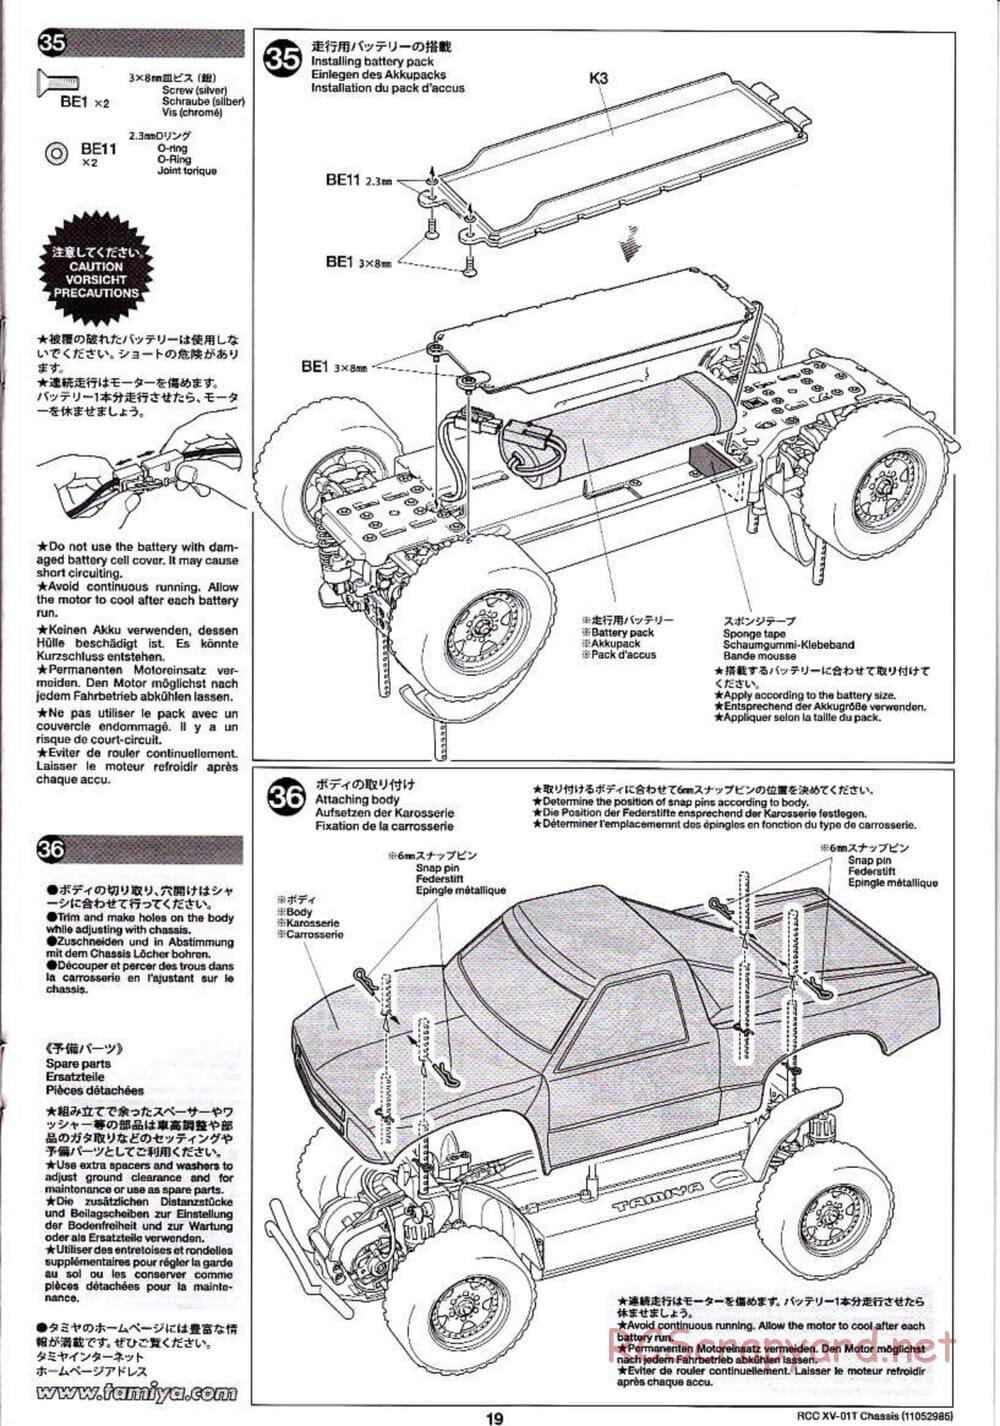 Tamiya - XV-01T Chassis - Manual - Page 19